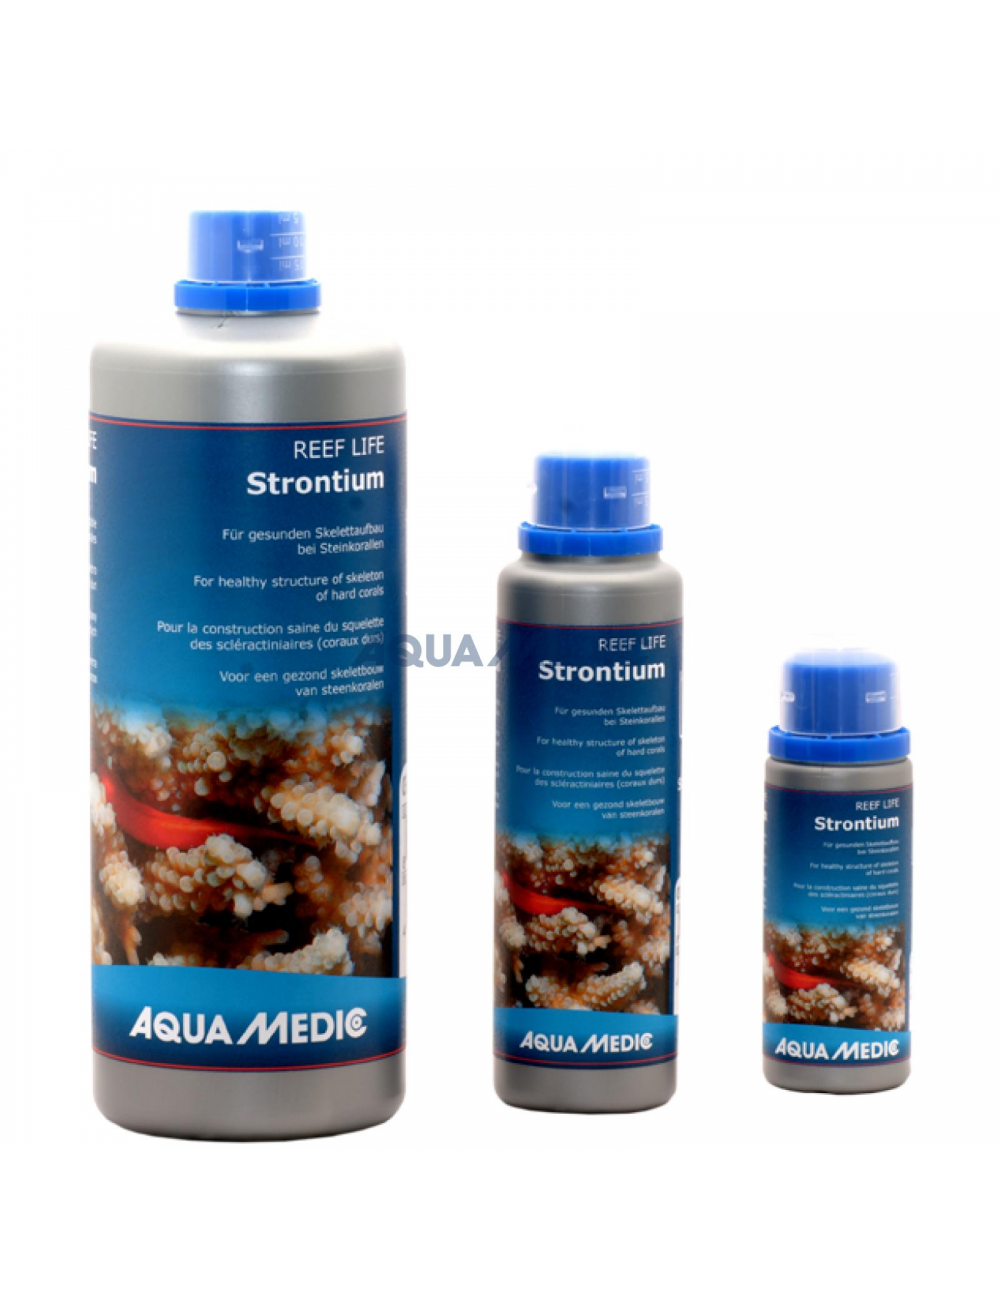 AQUA-MEDIC - REEF LIFE Strontium - 1000ml - Solution pour la croissance des coraux